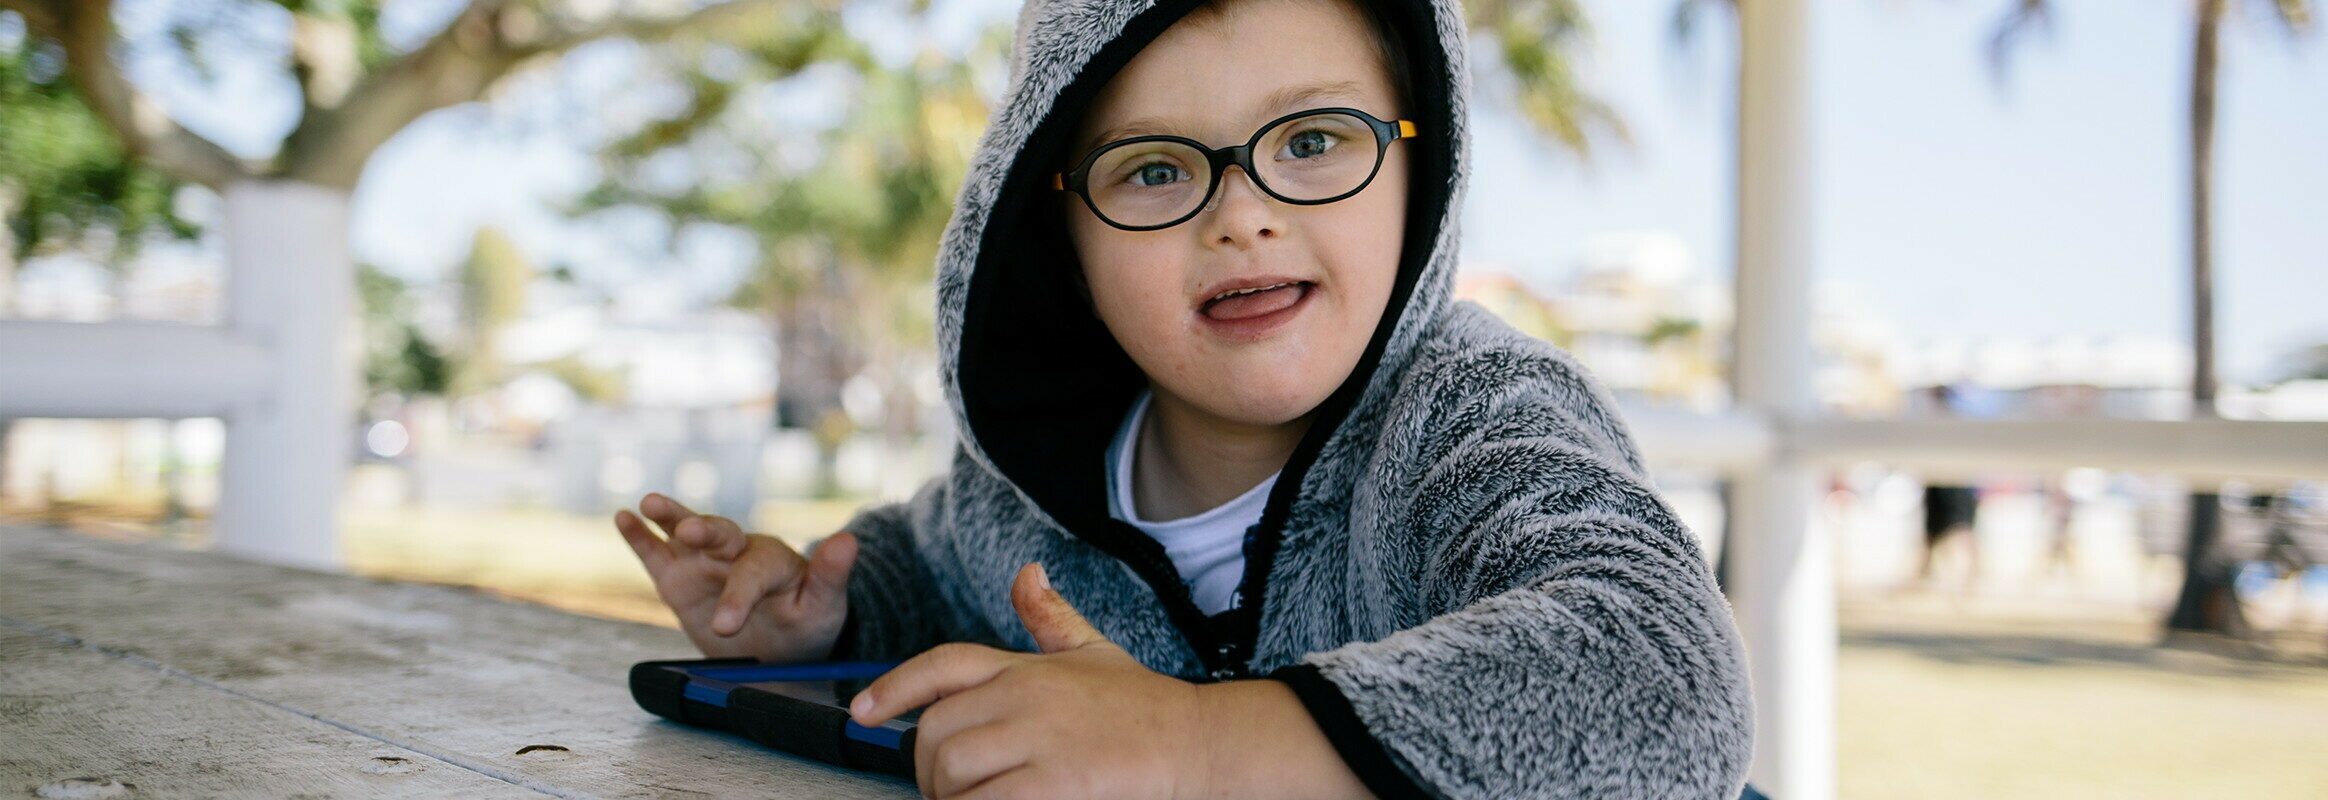 Lucas, een kleine witte jongen in een hoodie zit buiten, met een iPad en lacht